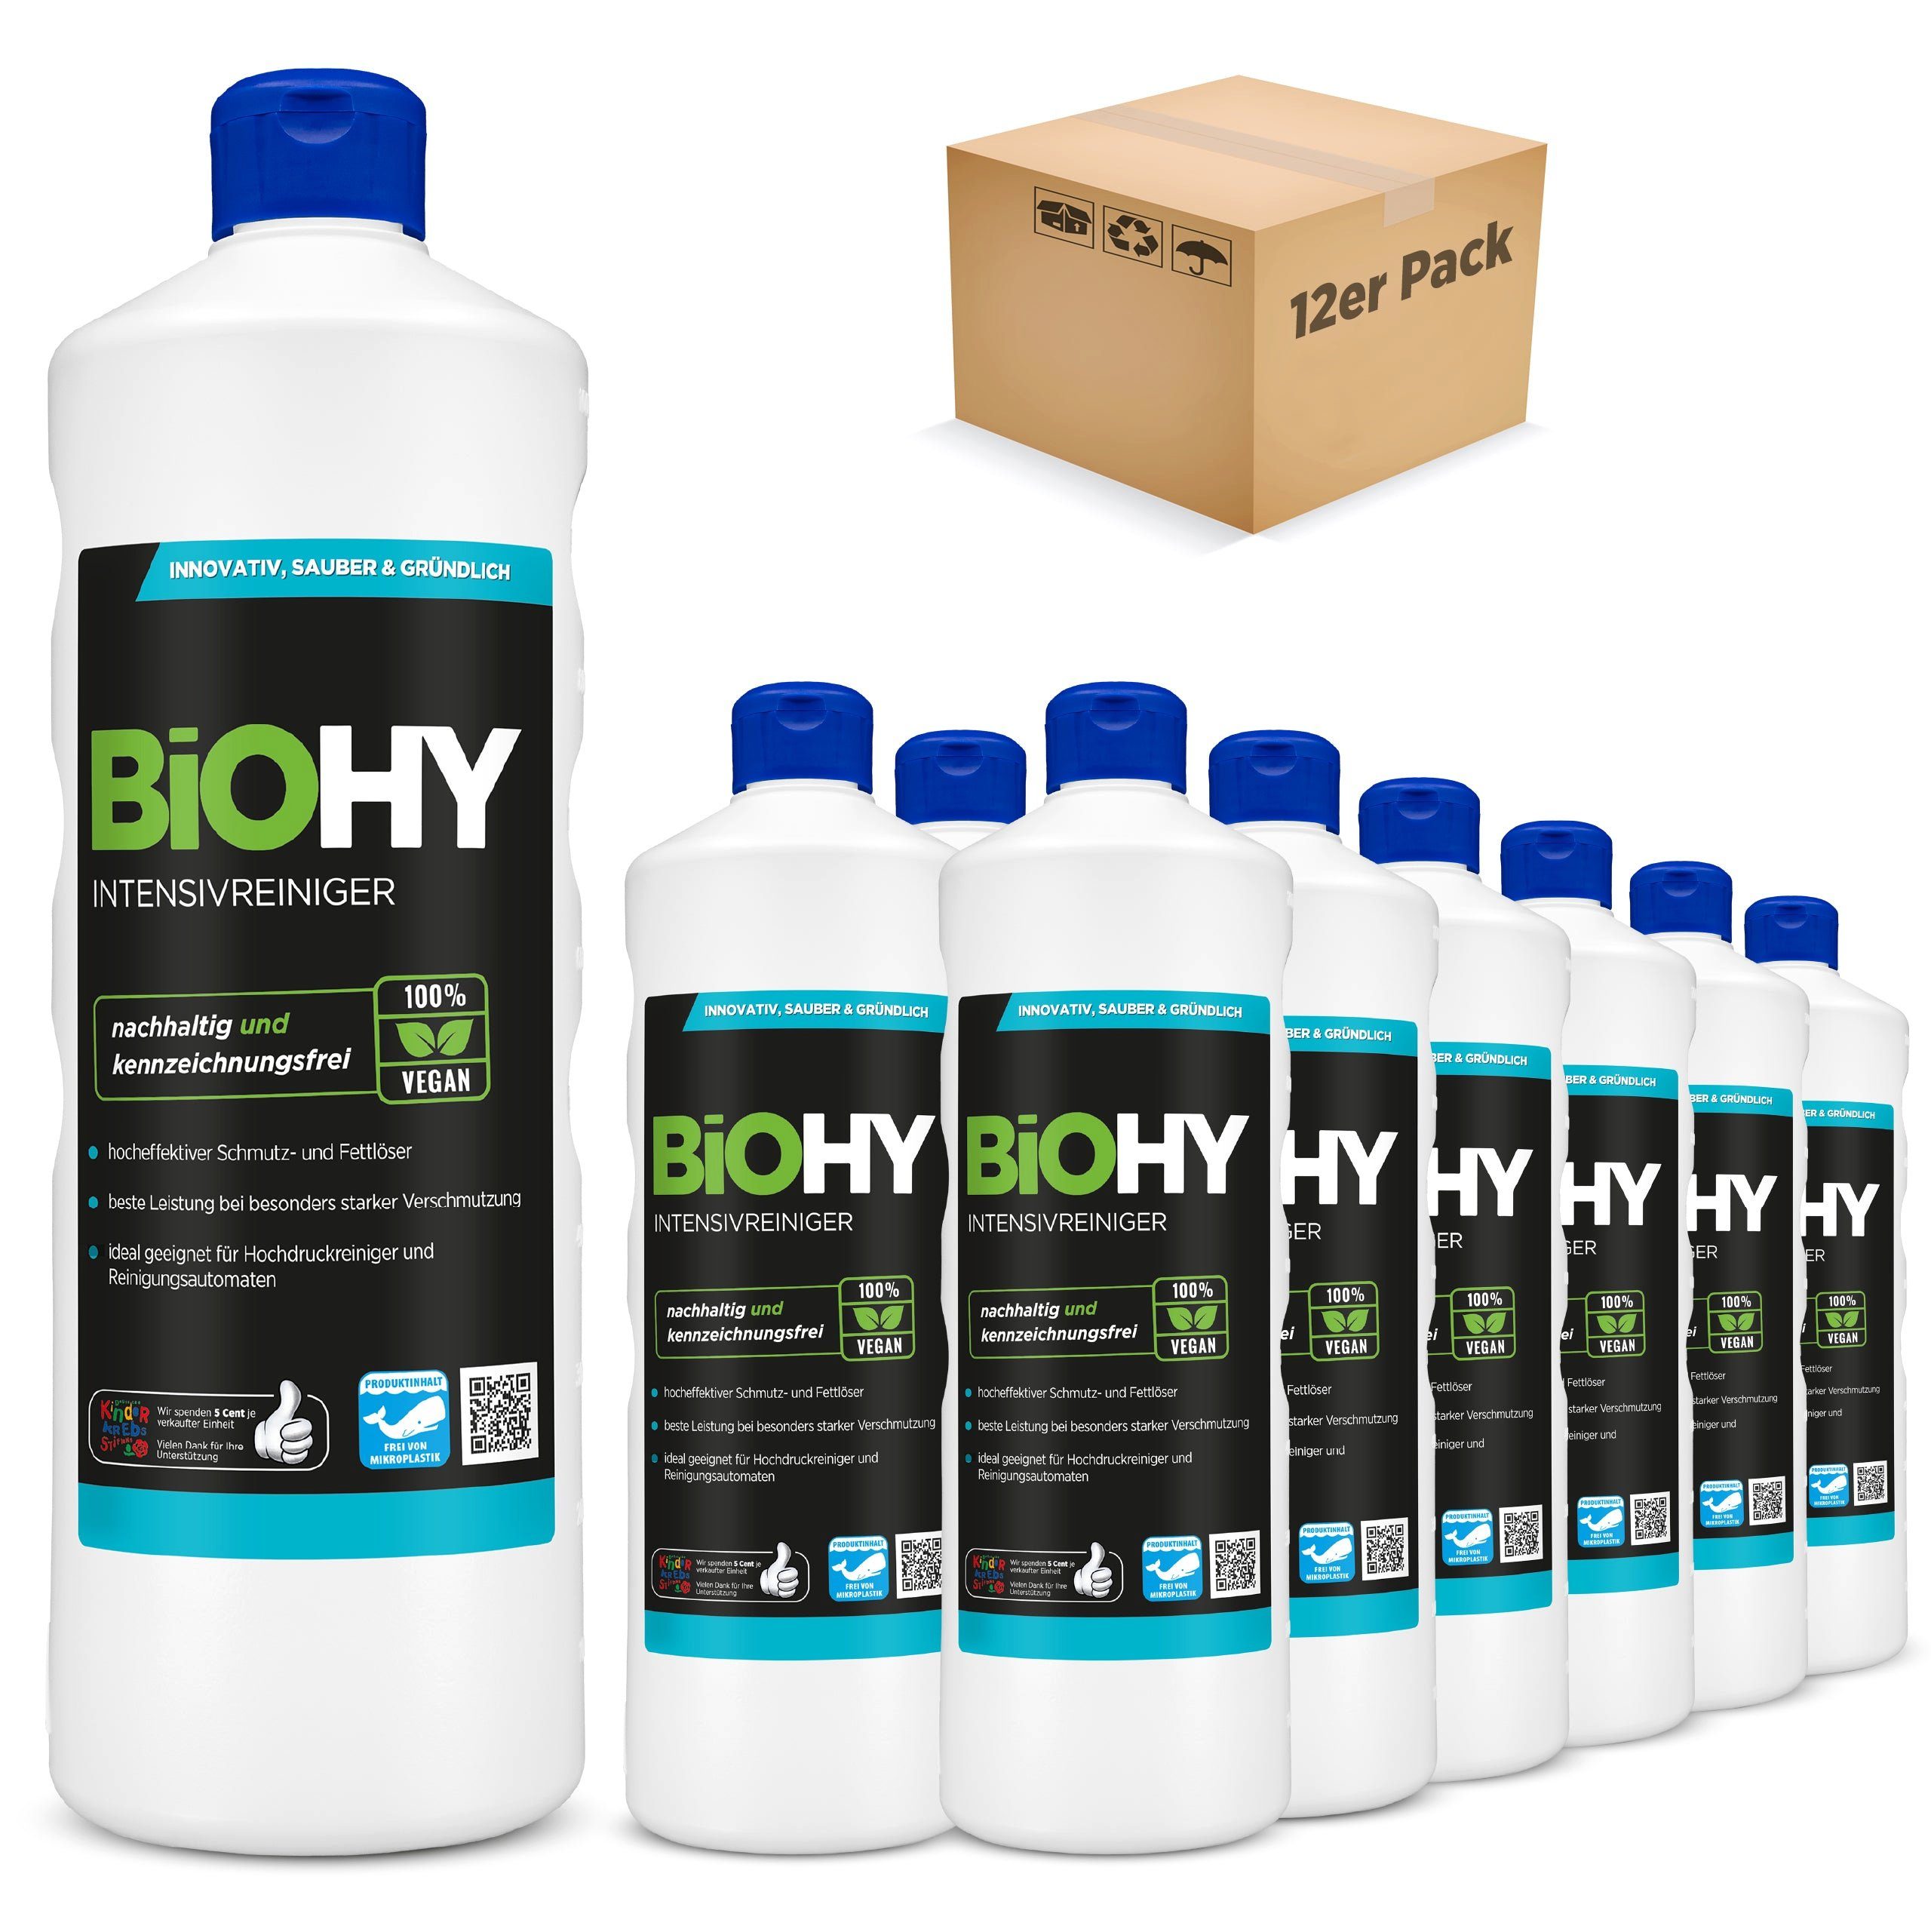 BiOHY Intensivreiniger 12er Pack (12 x 1 Liter Flasche) Allzweckreiniger (12-St)